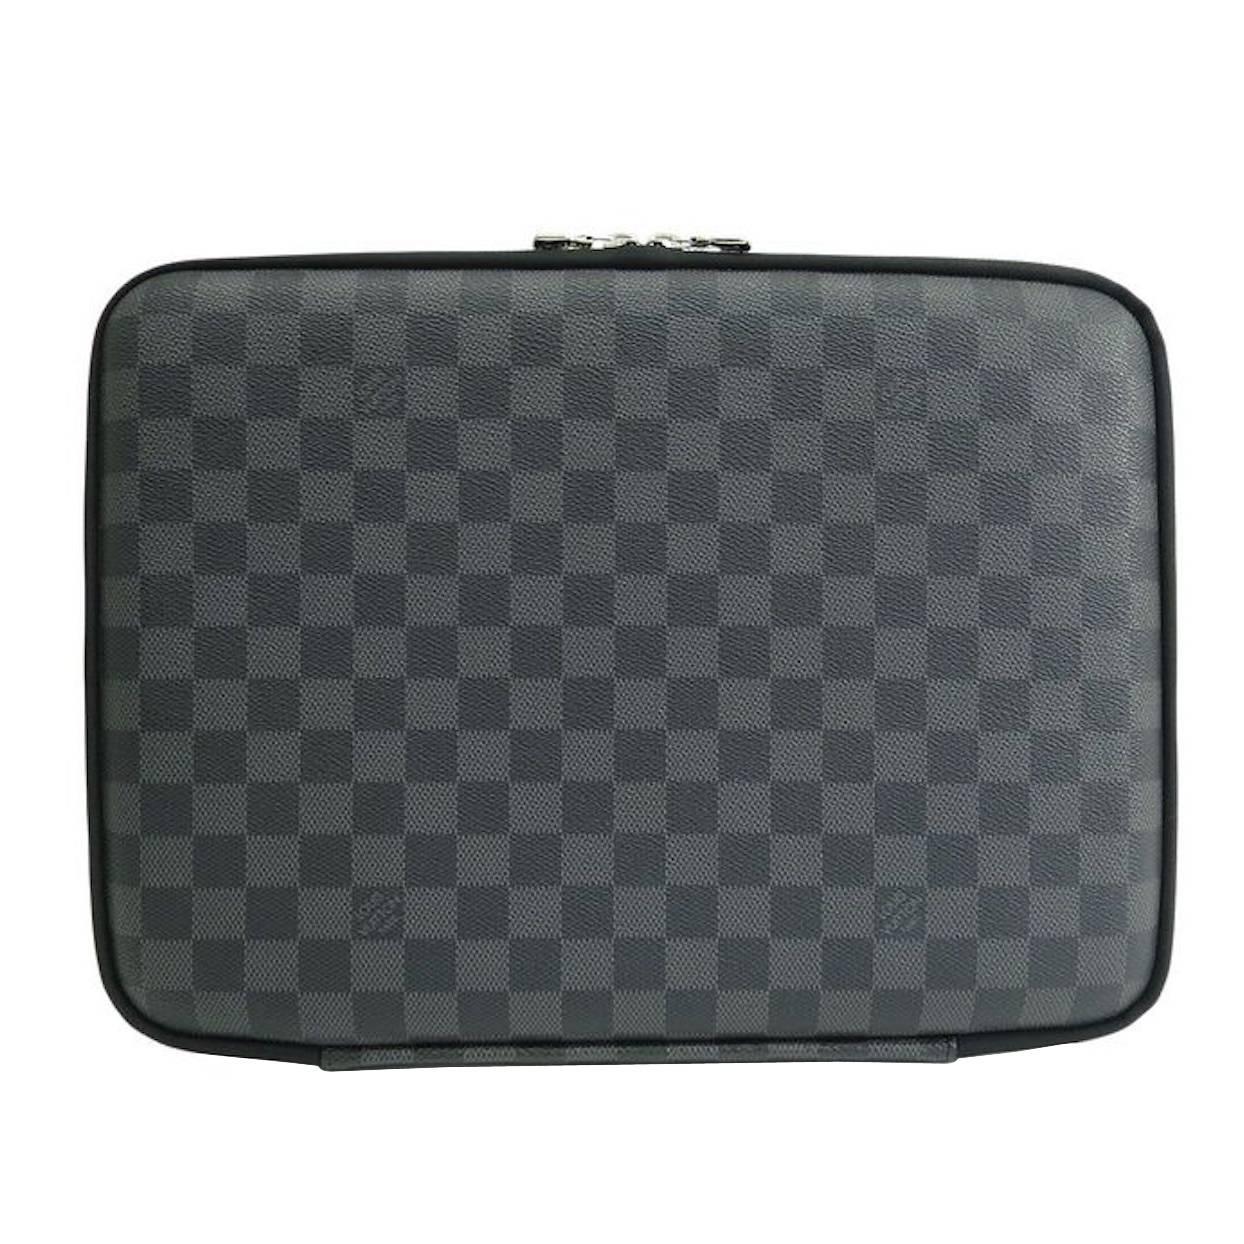 Louis Vuitton SOLD OUT Black Gray Men's Canvas Lap Top Tech Carrying Case Bag